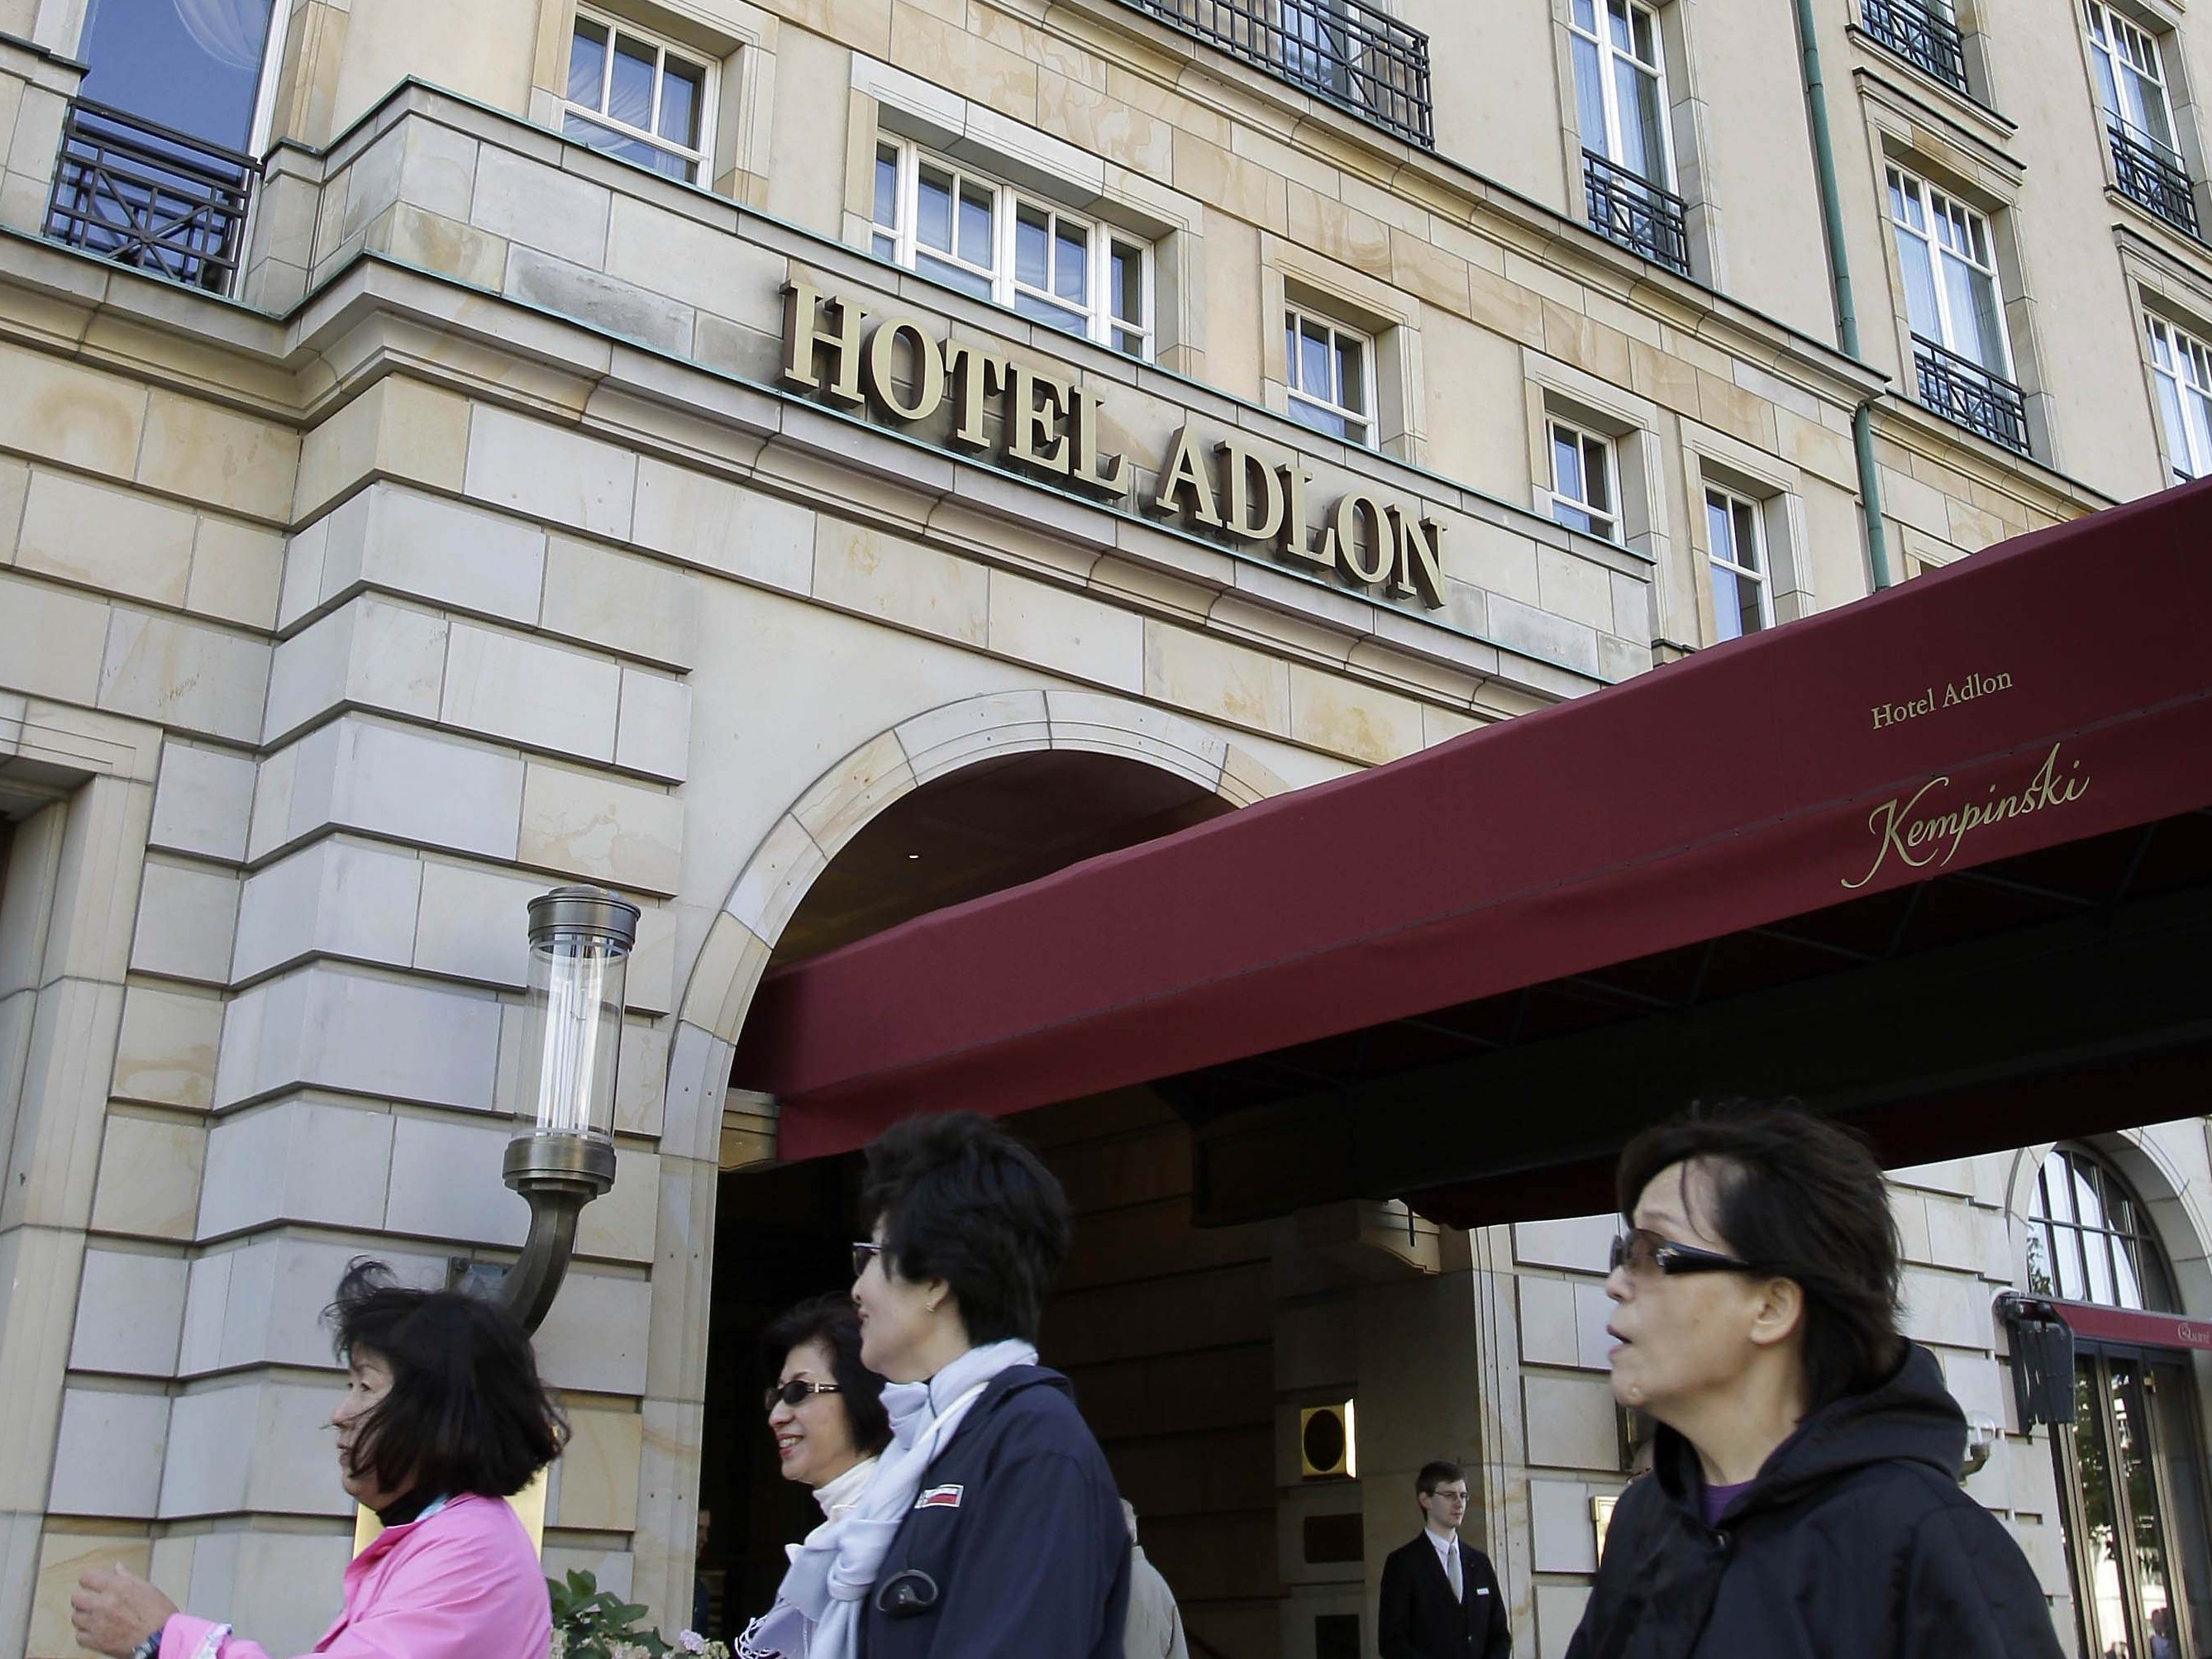 Hotel Adlon und der Eifelturm angeblich Ziele von Al-Kaida